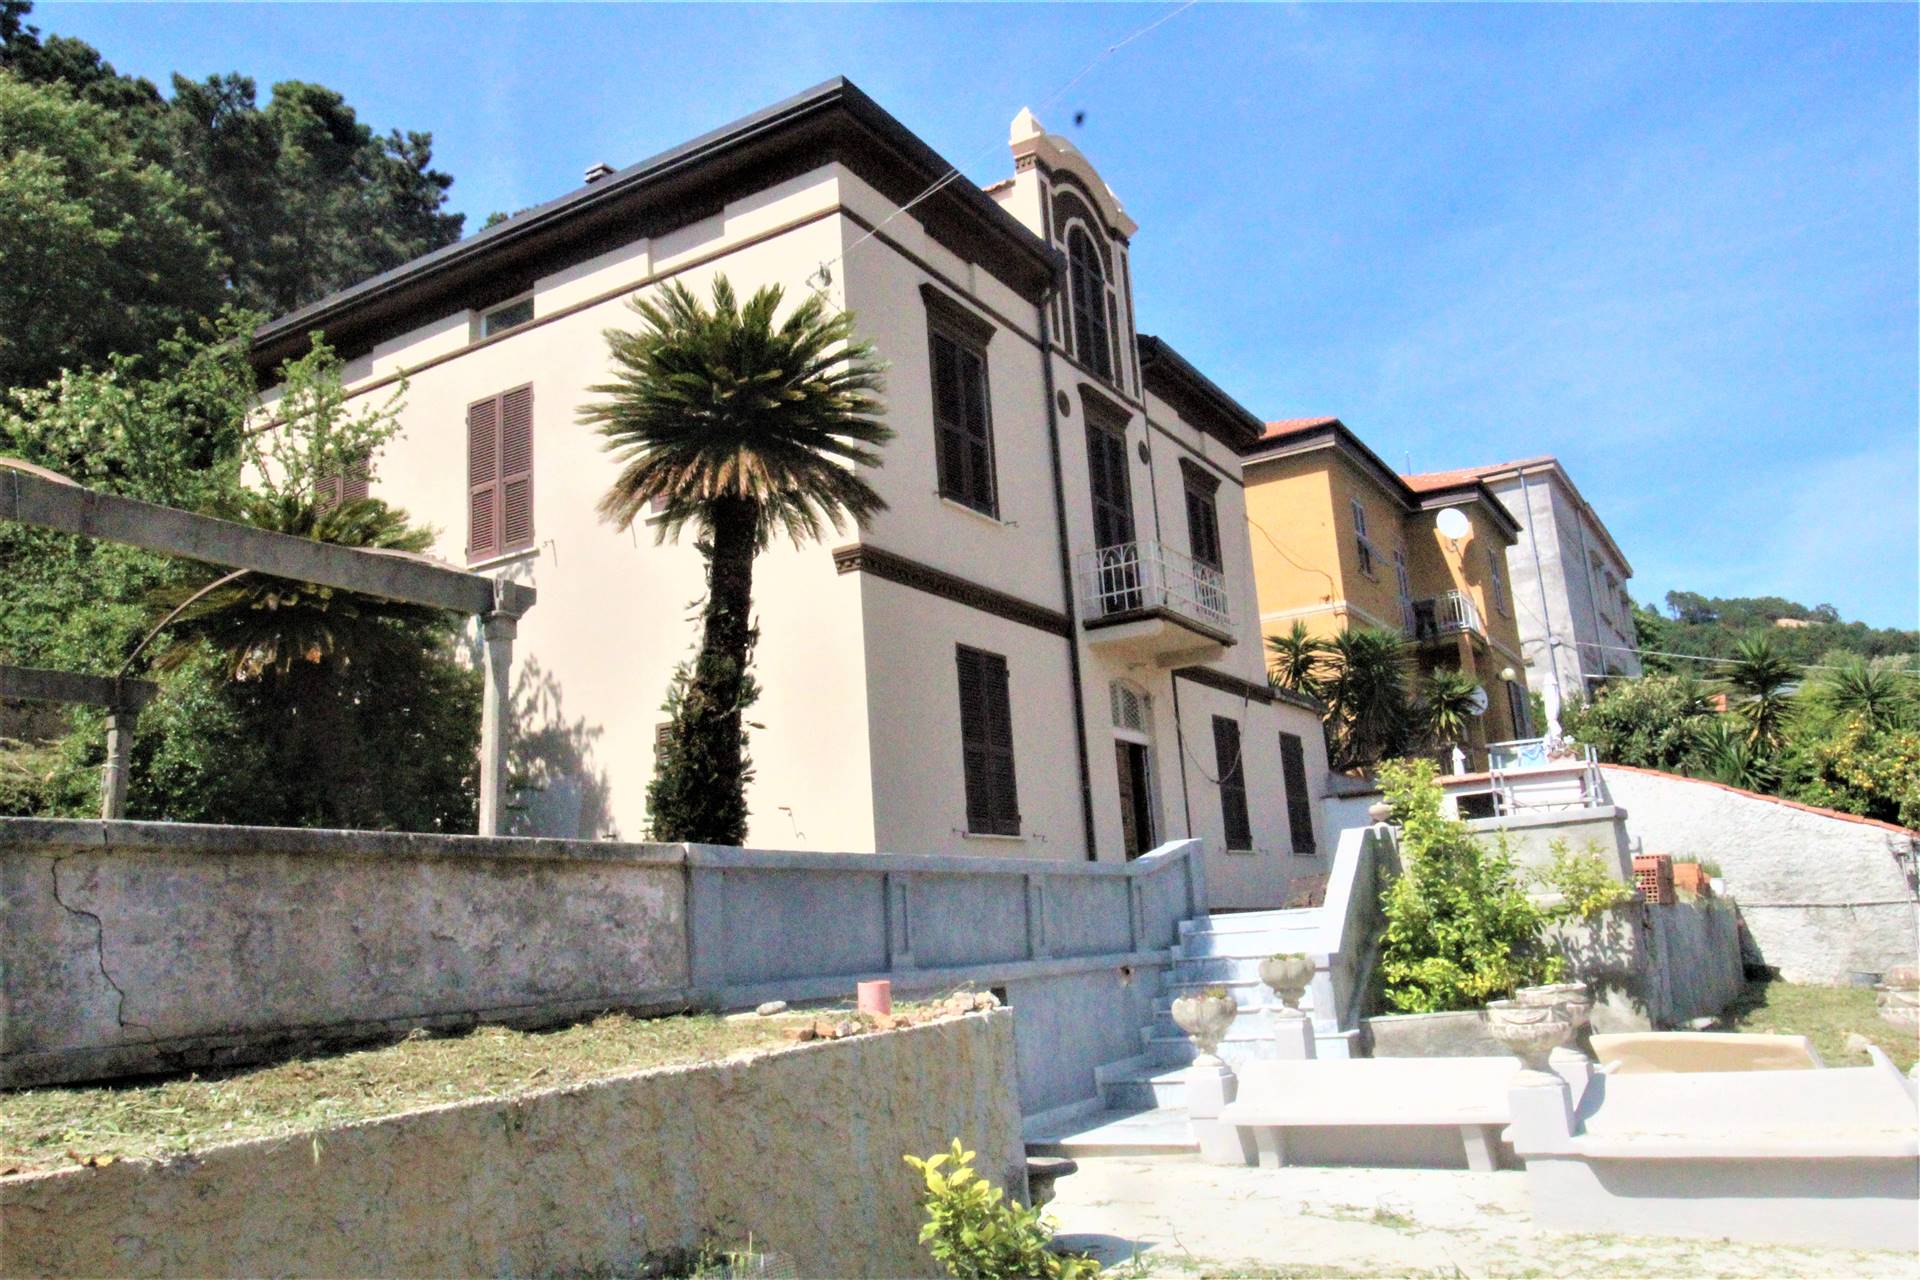 Villa in zona Pagliari,ruffino,muggiano a la Spezia